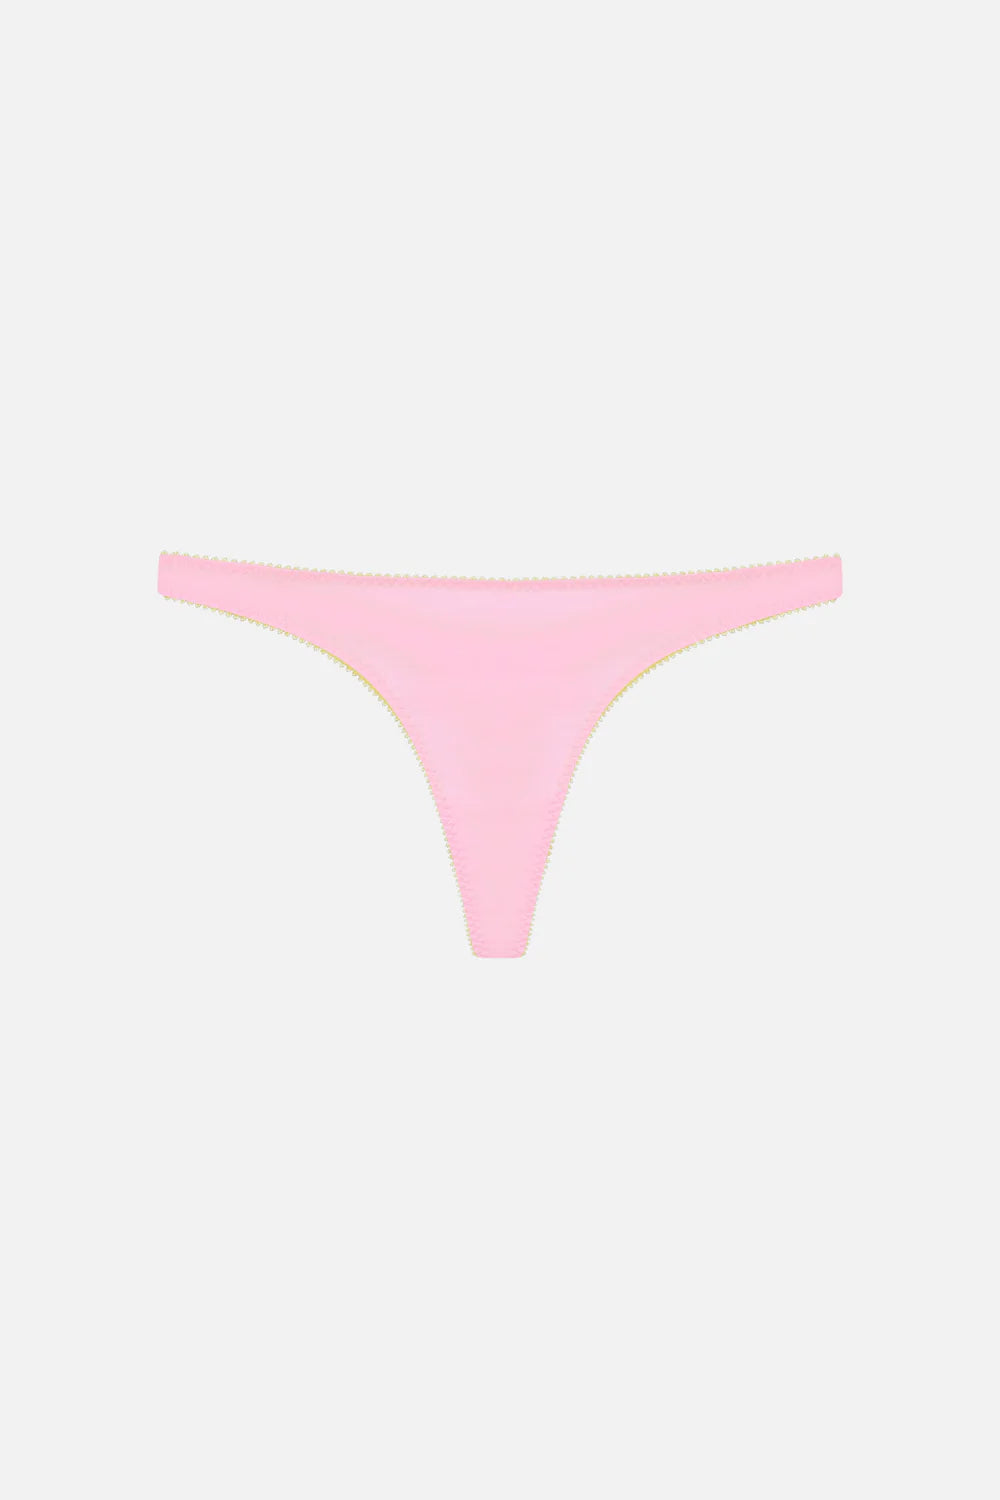 Skyler Organic Cotton Thong | Flamingo Pink